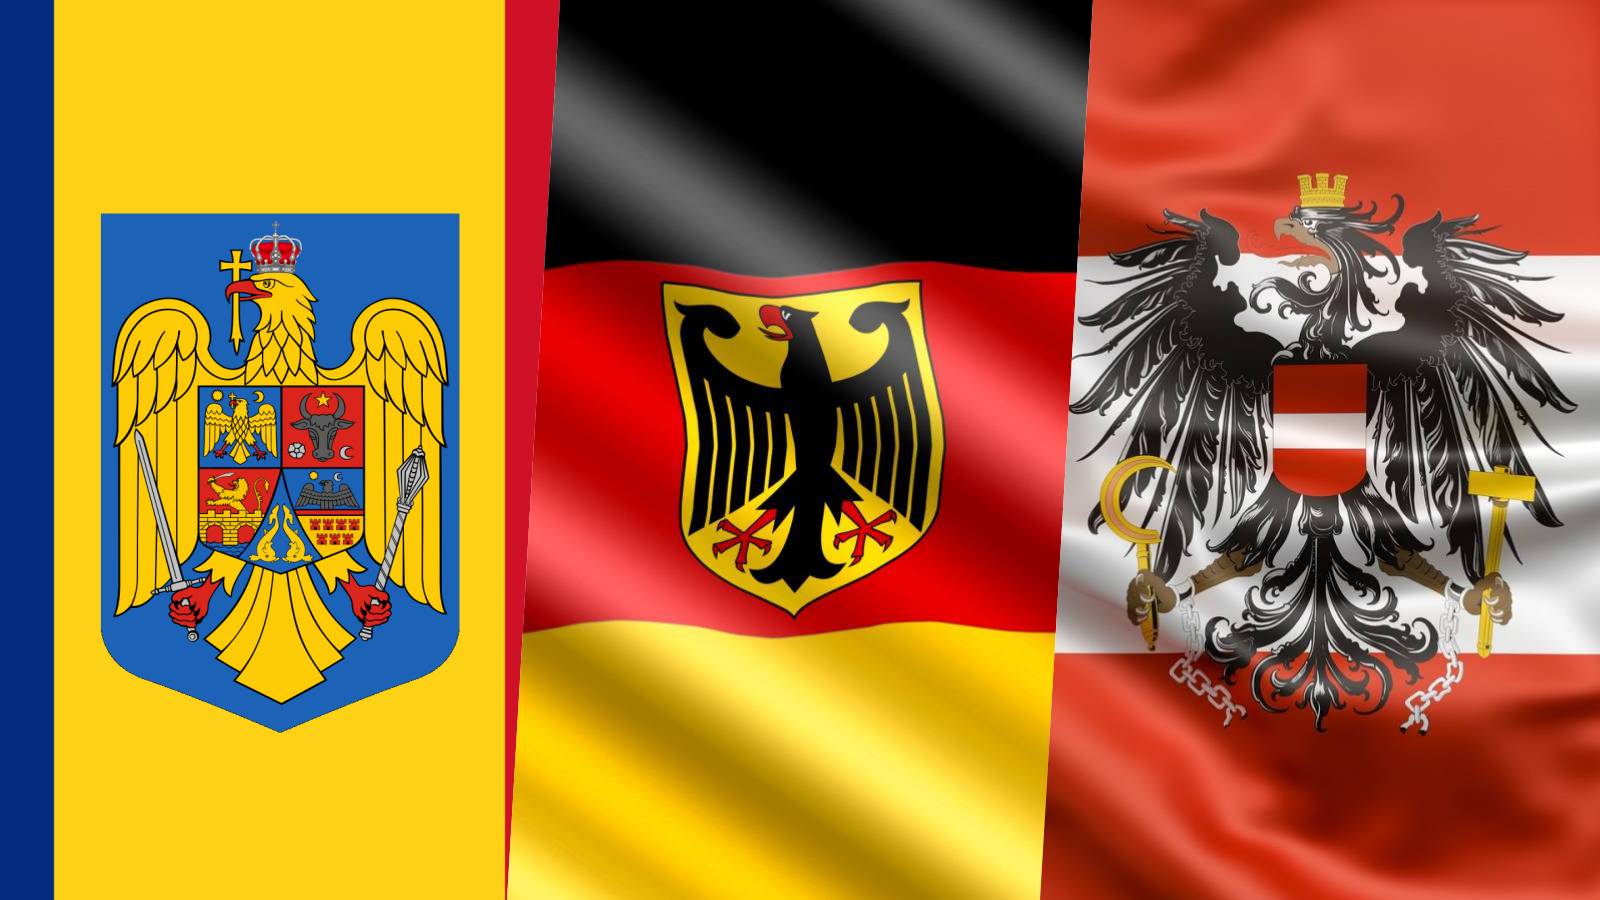 Alleanza dell'Austria ULTIMA VOLTA Germania IMPORTANTE Adesione della Romania a Schengen